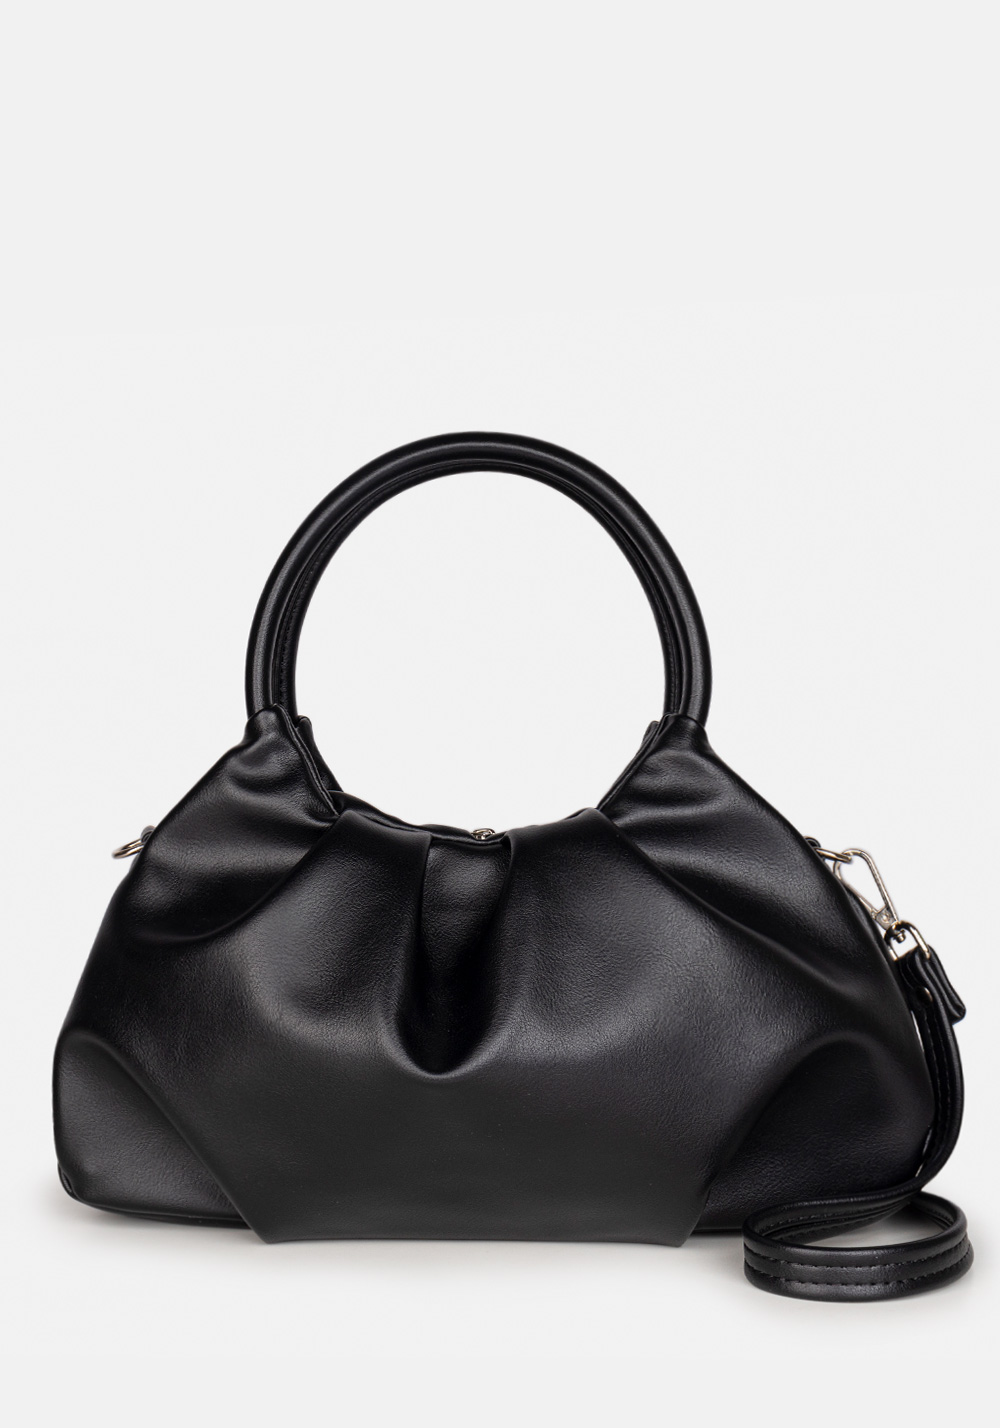 Женская сумка L-craft модель №1556 | кожзам | гладкий | цвет черный | Р924-1 | арт. 32668 - купить от производителя оптом и в розницу